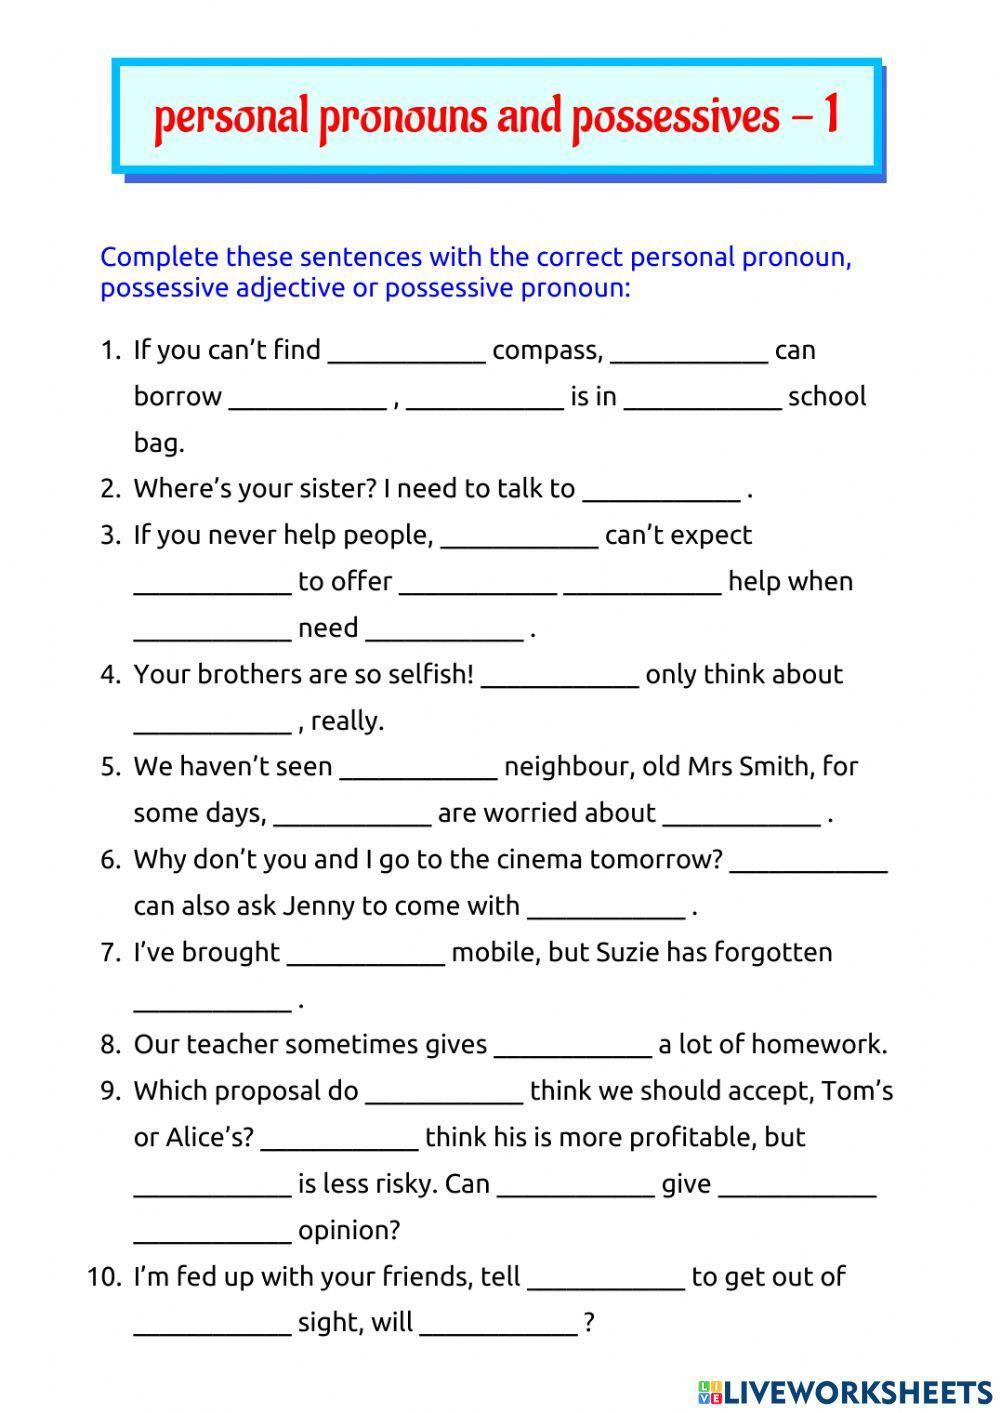 Pronouns and possessives 1